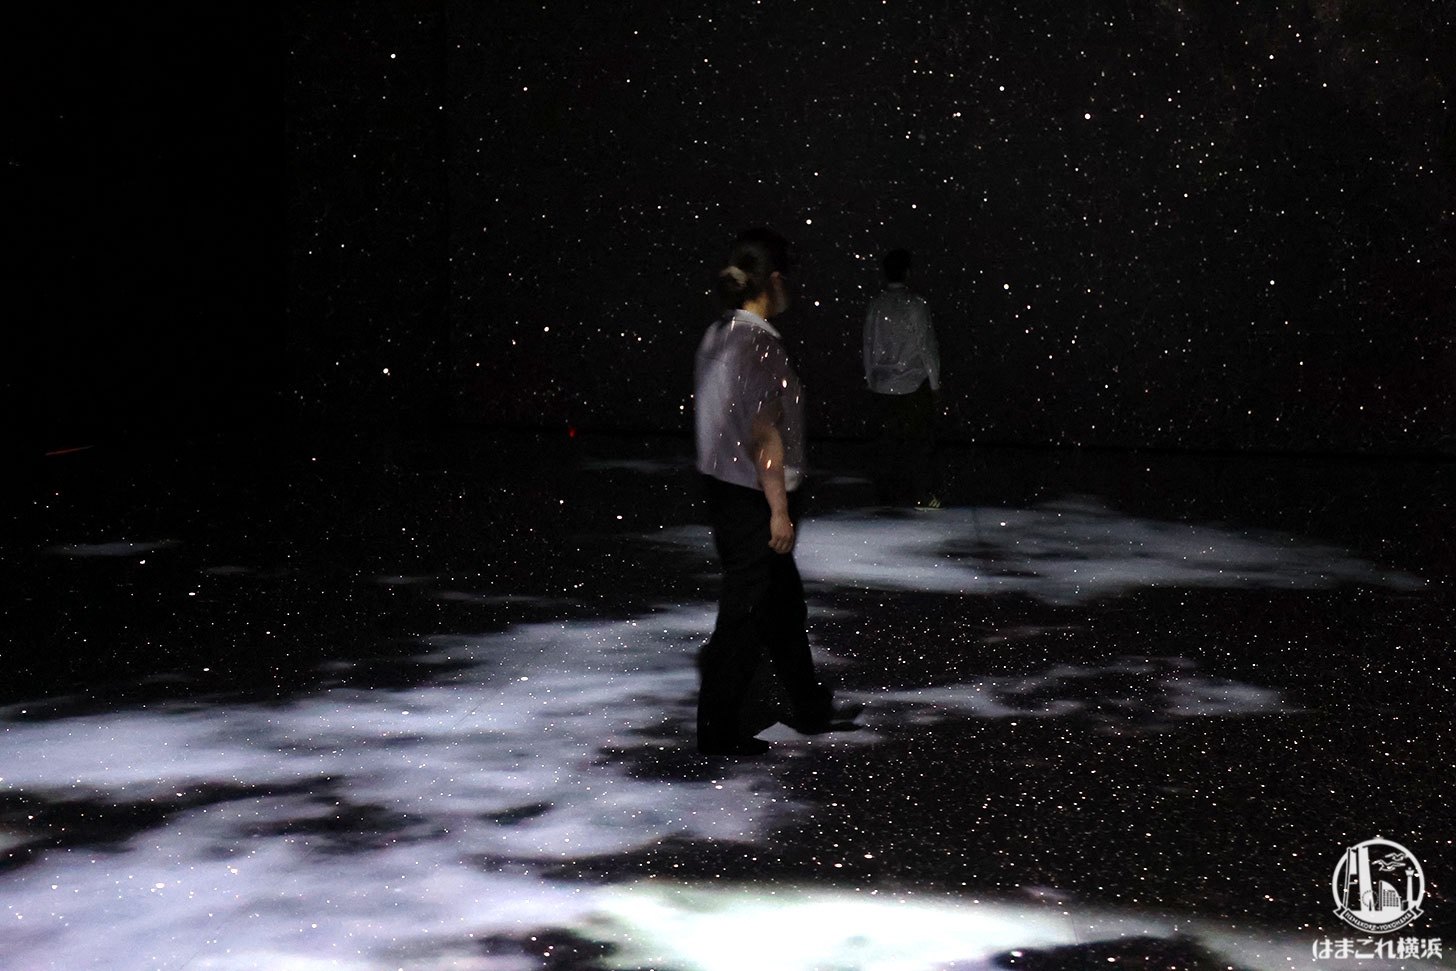 赤レンガ・アートプラネタリウム「星と歩く」体験風景